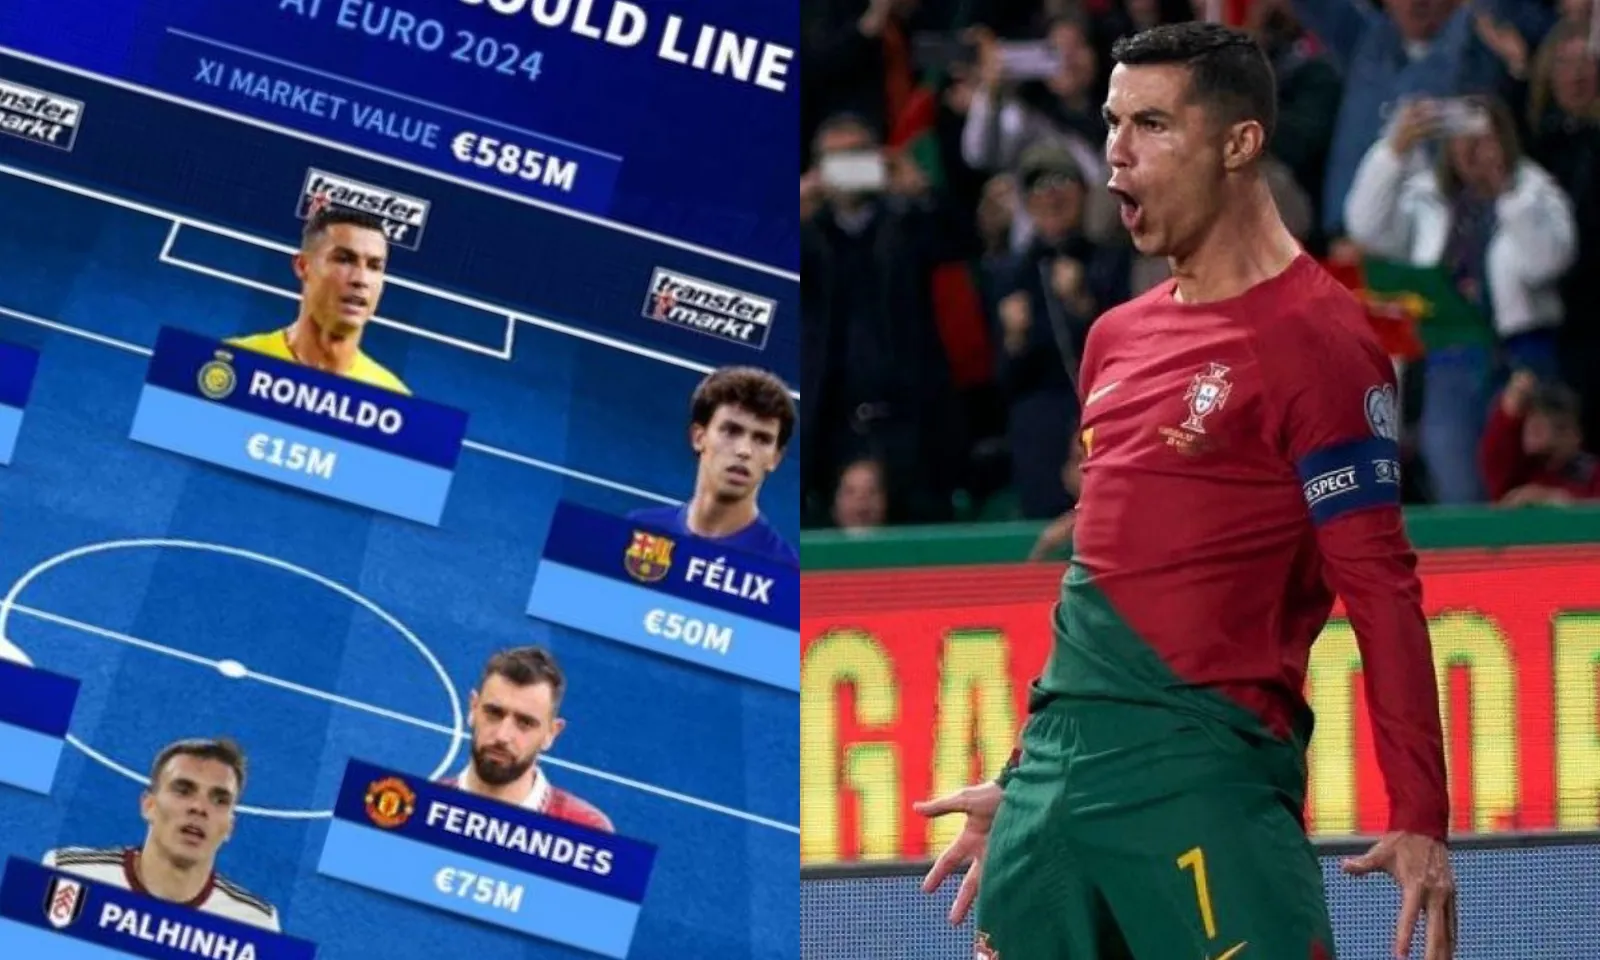 Đội hình dự kiến tuyển Bồ Đào Nha tại EURO 2024: Đại bác Ronaldo | 2 máy tiếp đạn thành Manchester